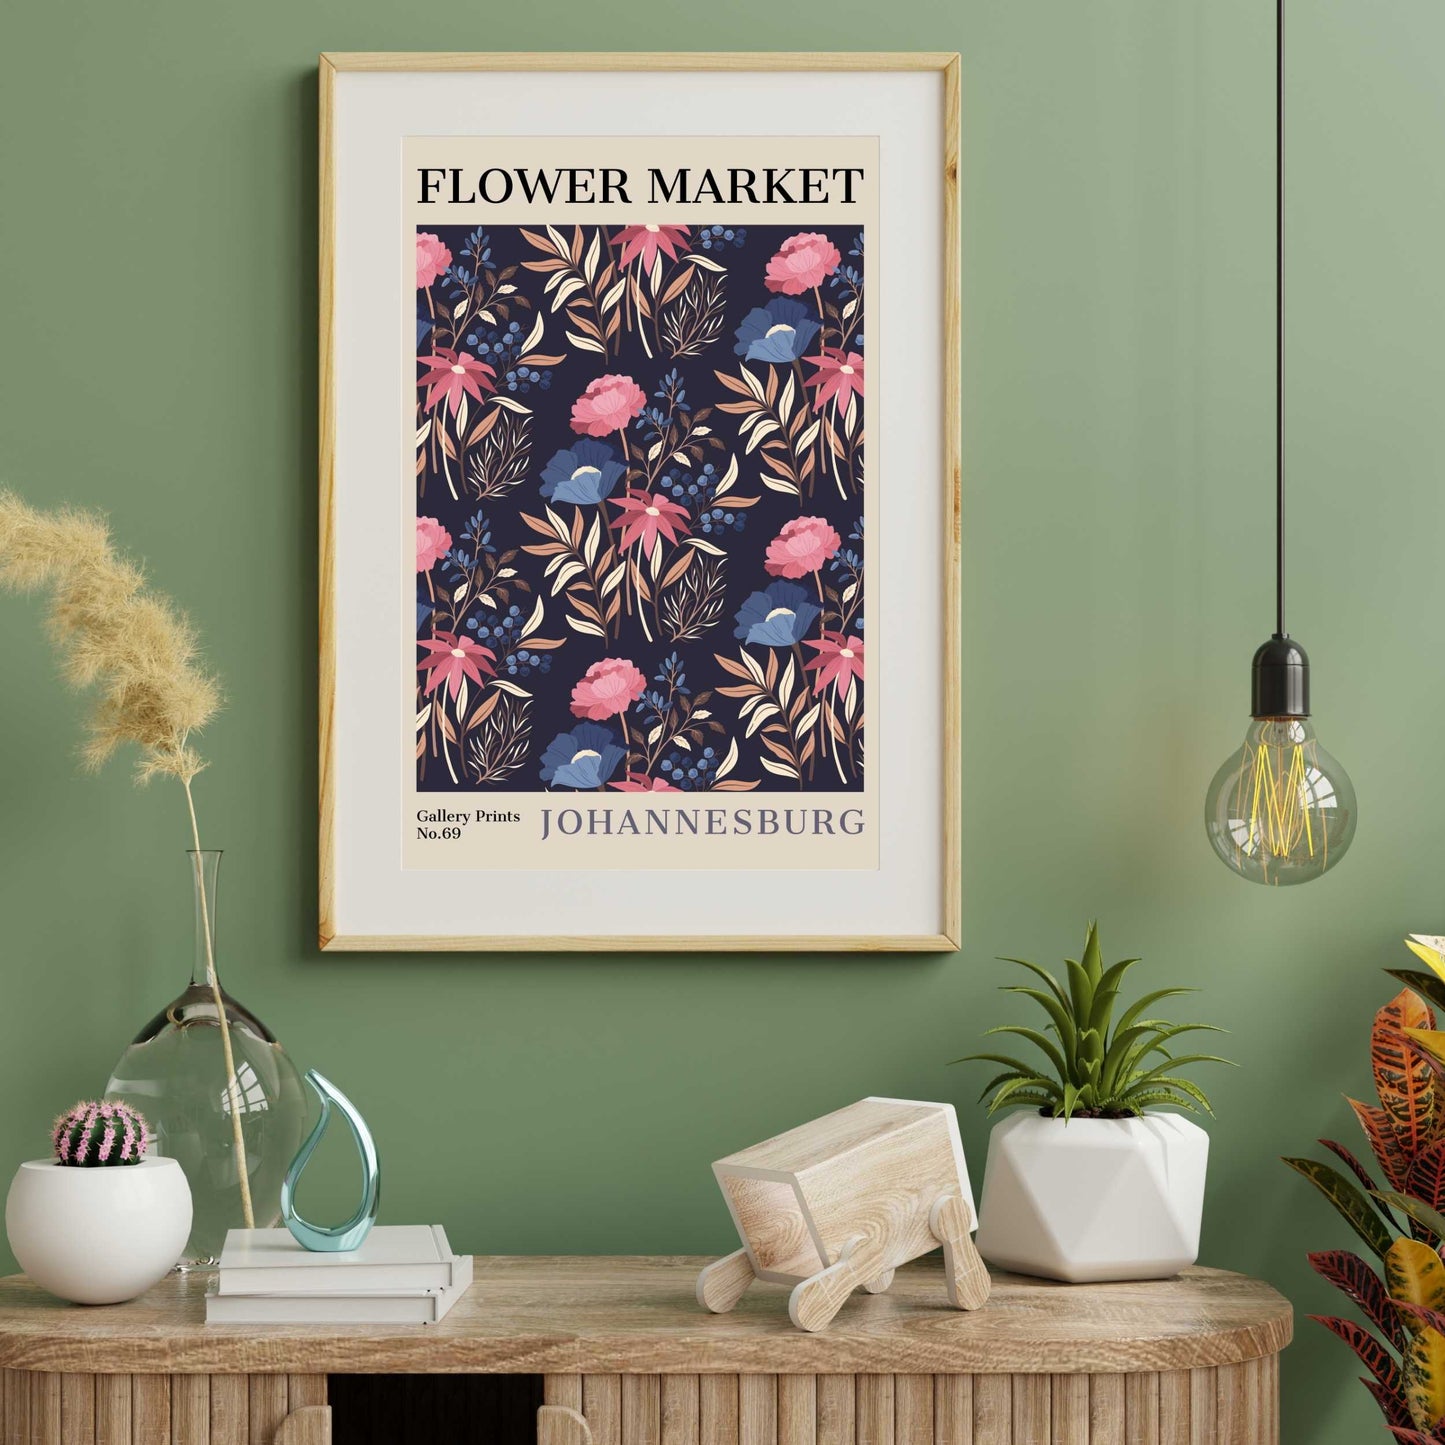 Johannesburg Flower Market Poster | S02